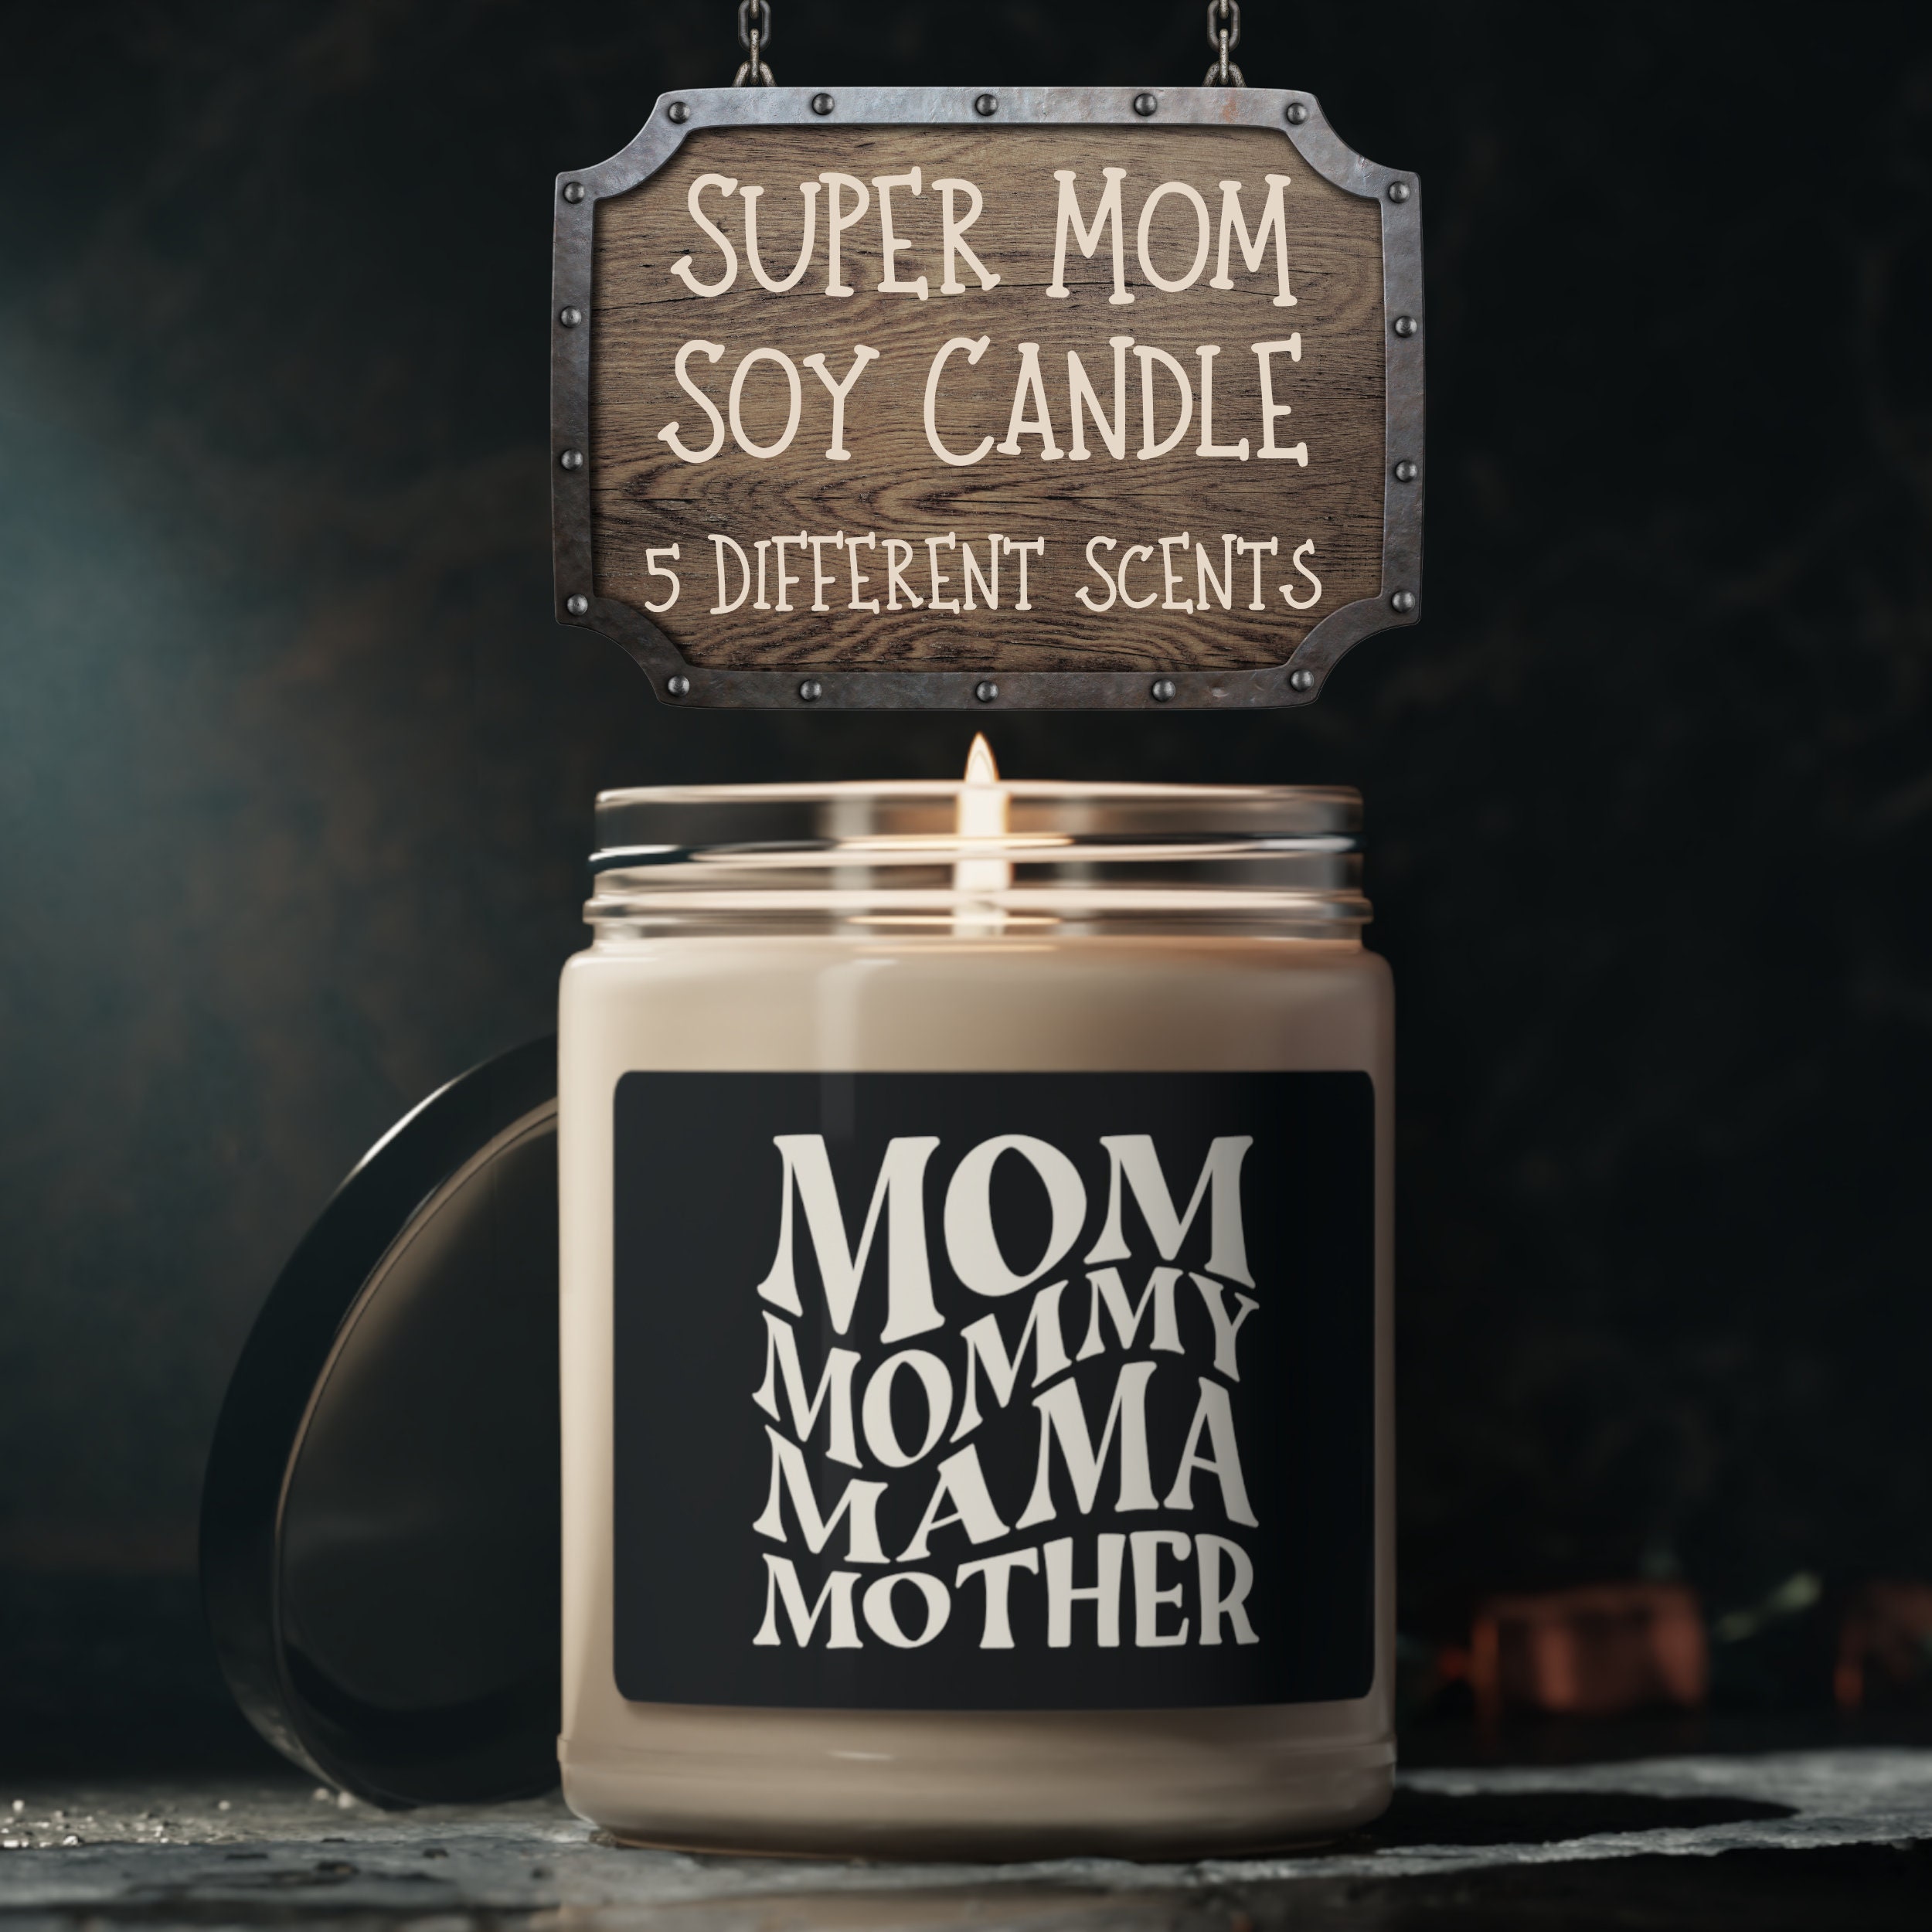 Super Mom Soy Candle – The Card Bureau